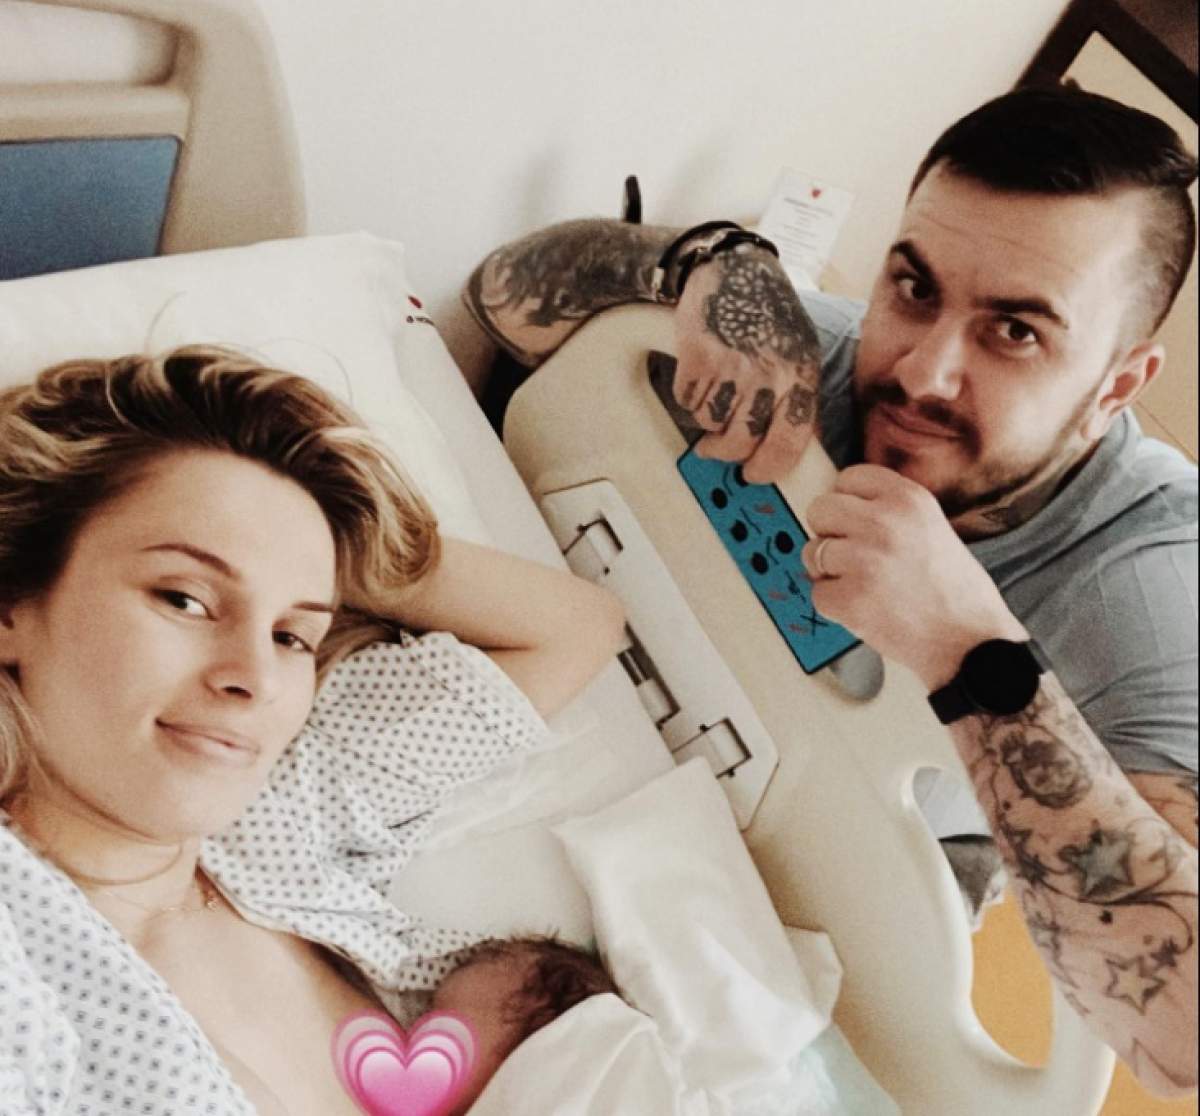 Elly de la MPFM a născut! Tânăra și Cristian Șonea au devenit părinți de fetiță: ”E incredibil sentimentul” / FOTO